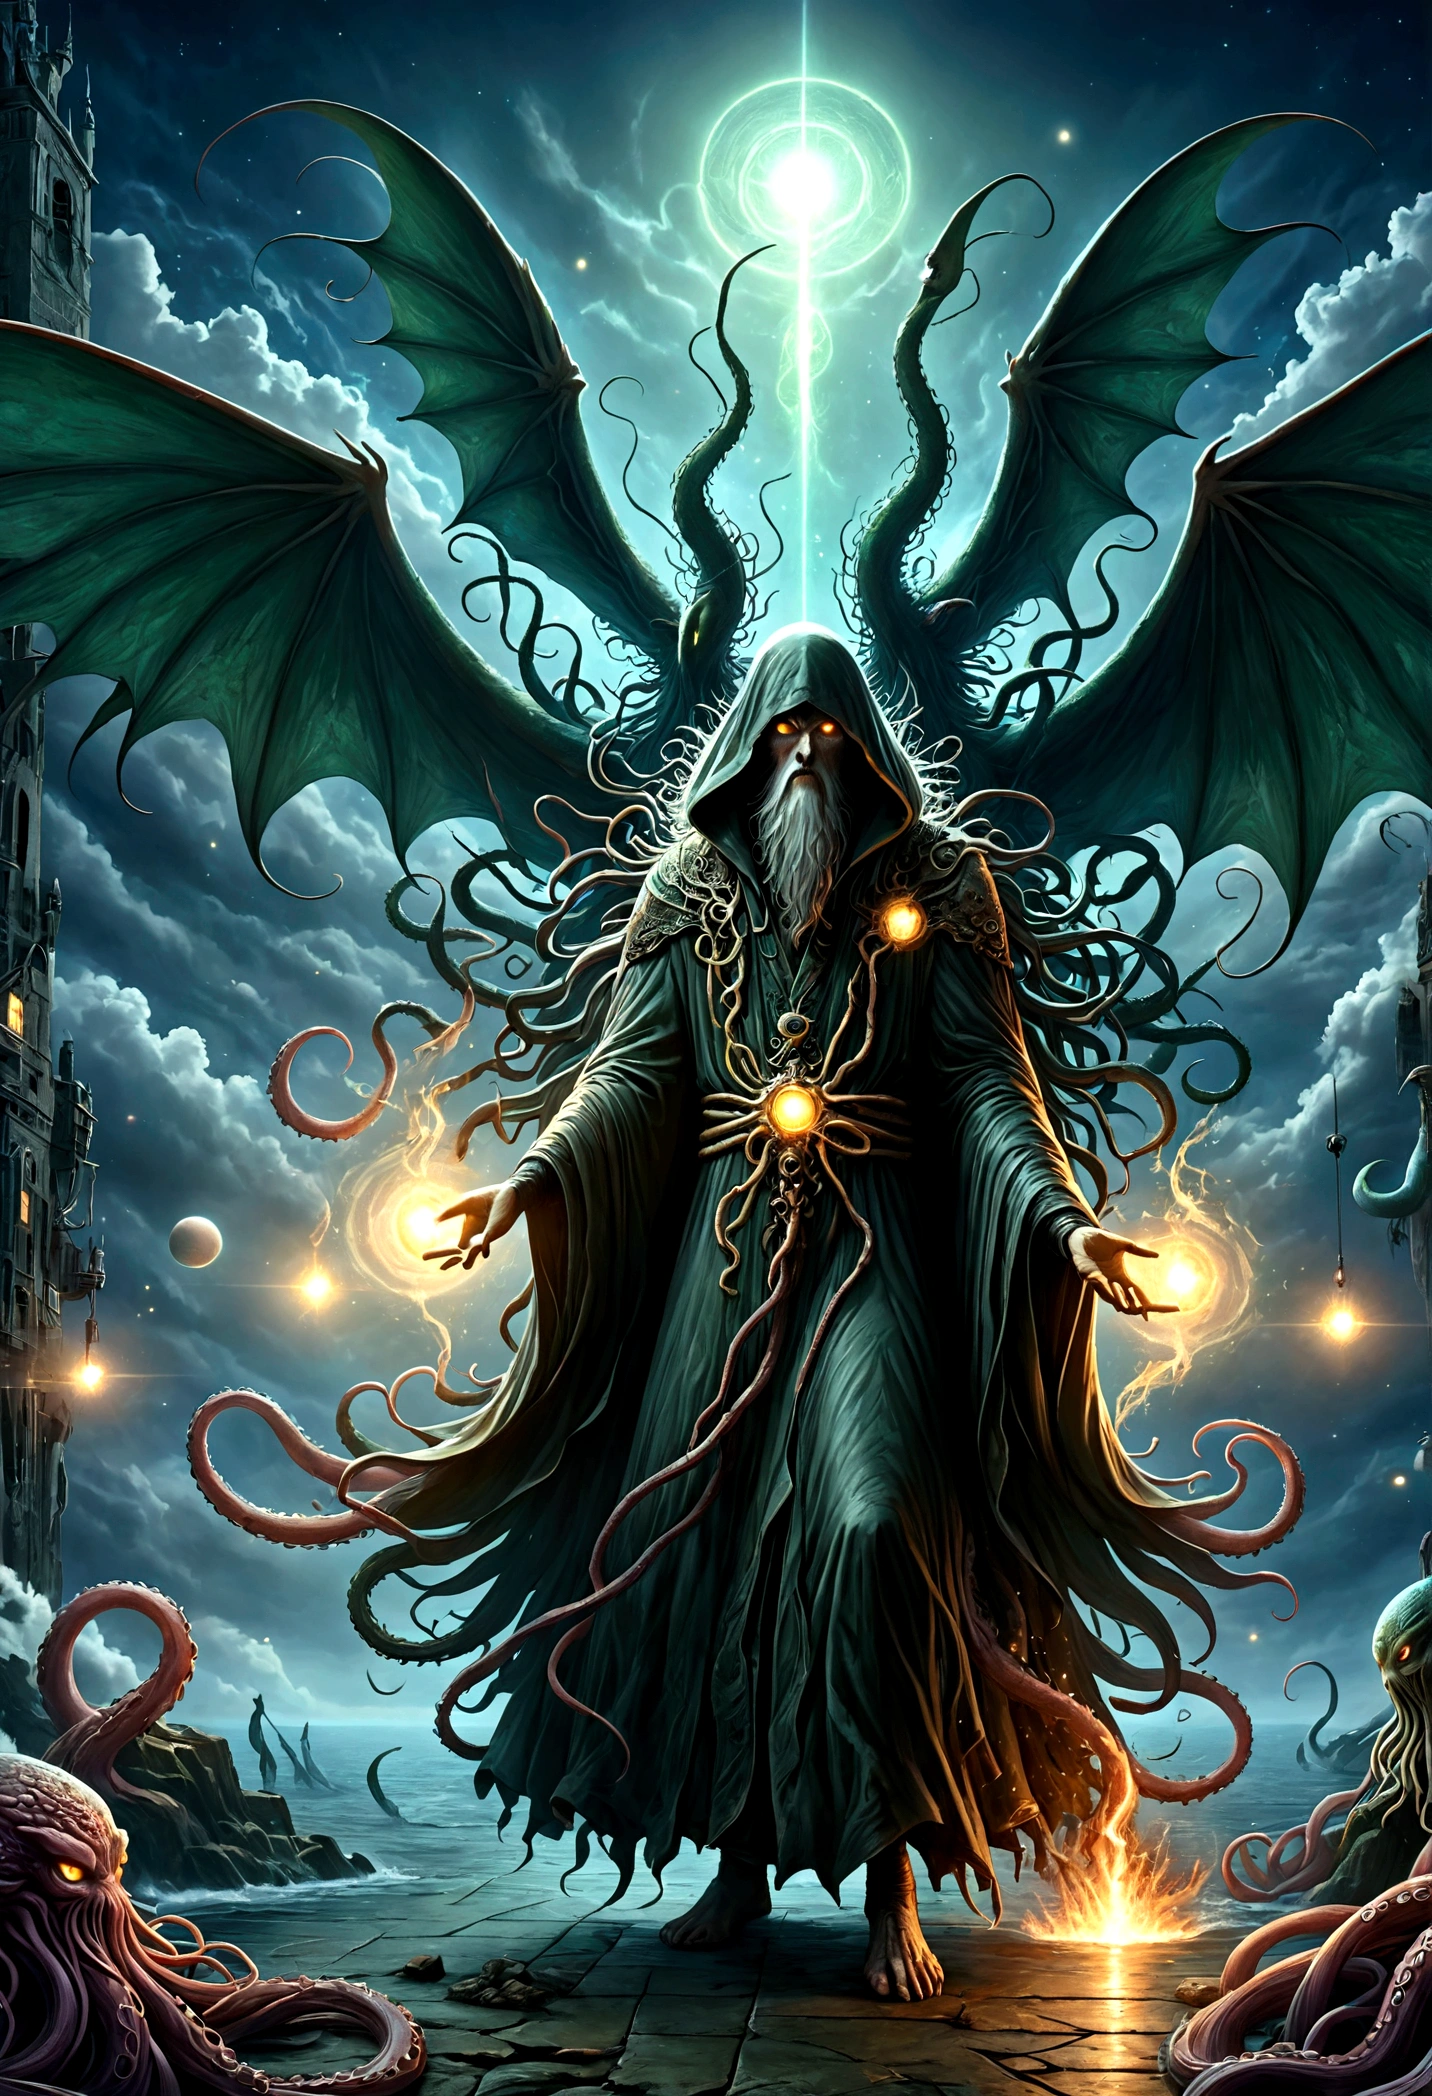 Cthulhu Mythos，Cosmology，Long tentacles，Symbol of the sacred